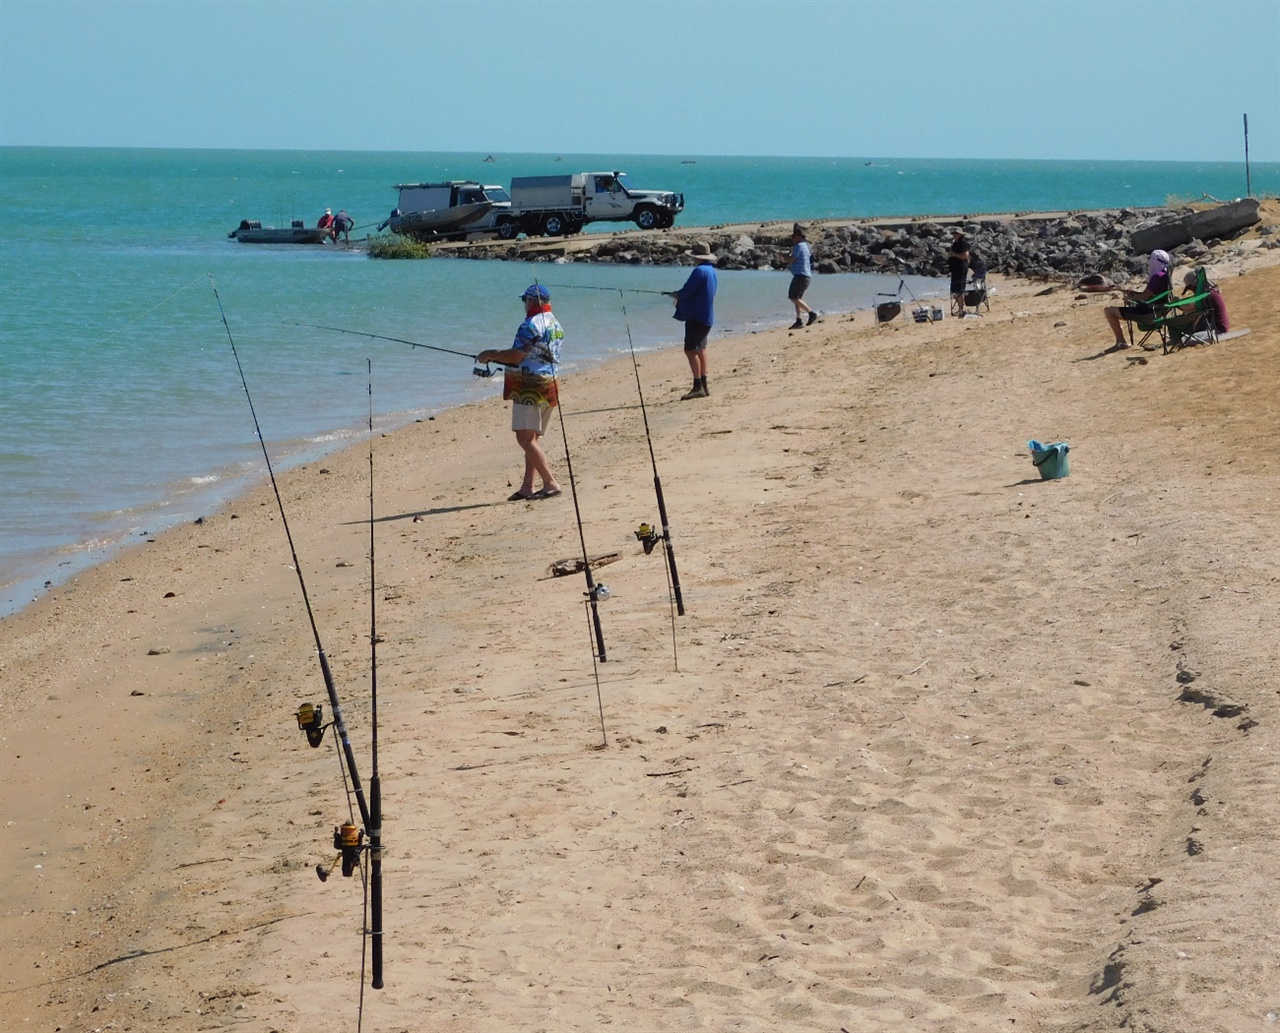 물고기가 풍성한 카룸바 해변, 배를 타고 바다로 나가는 사람도 많이 볼 수 있다.